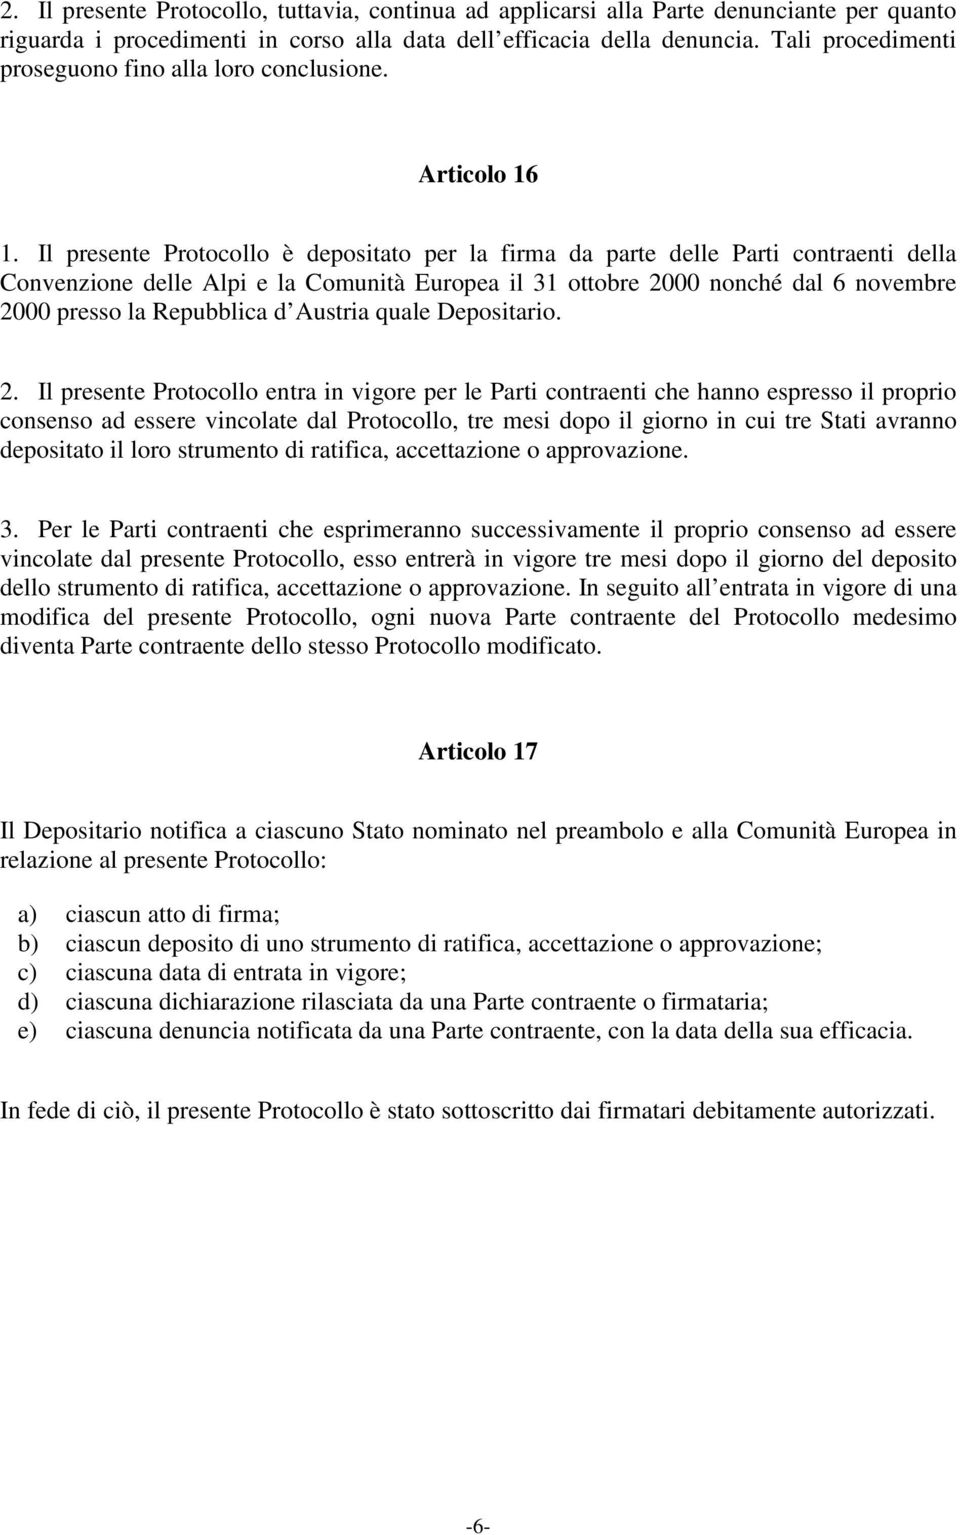 Il presente Protocollo è depositato per la firma da parte delle Parti contraenti della Convenzione delle Alpi e la Comunità Europea il 31 ottobre 2000 nonché dal 6 novembre 2000 presso la Repubblica